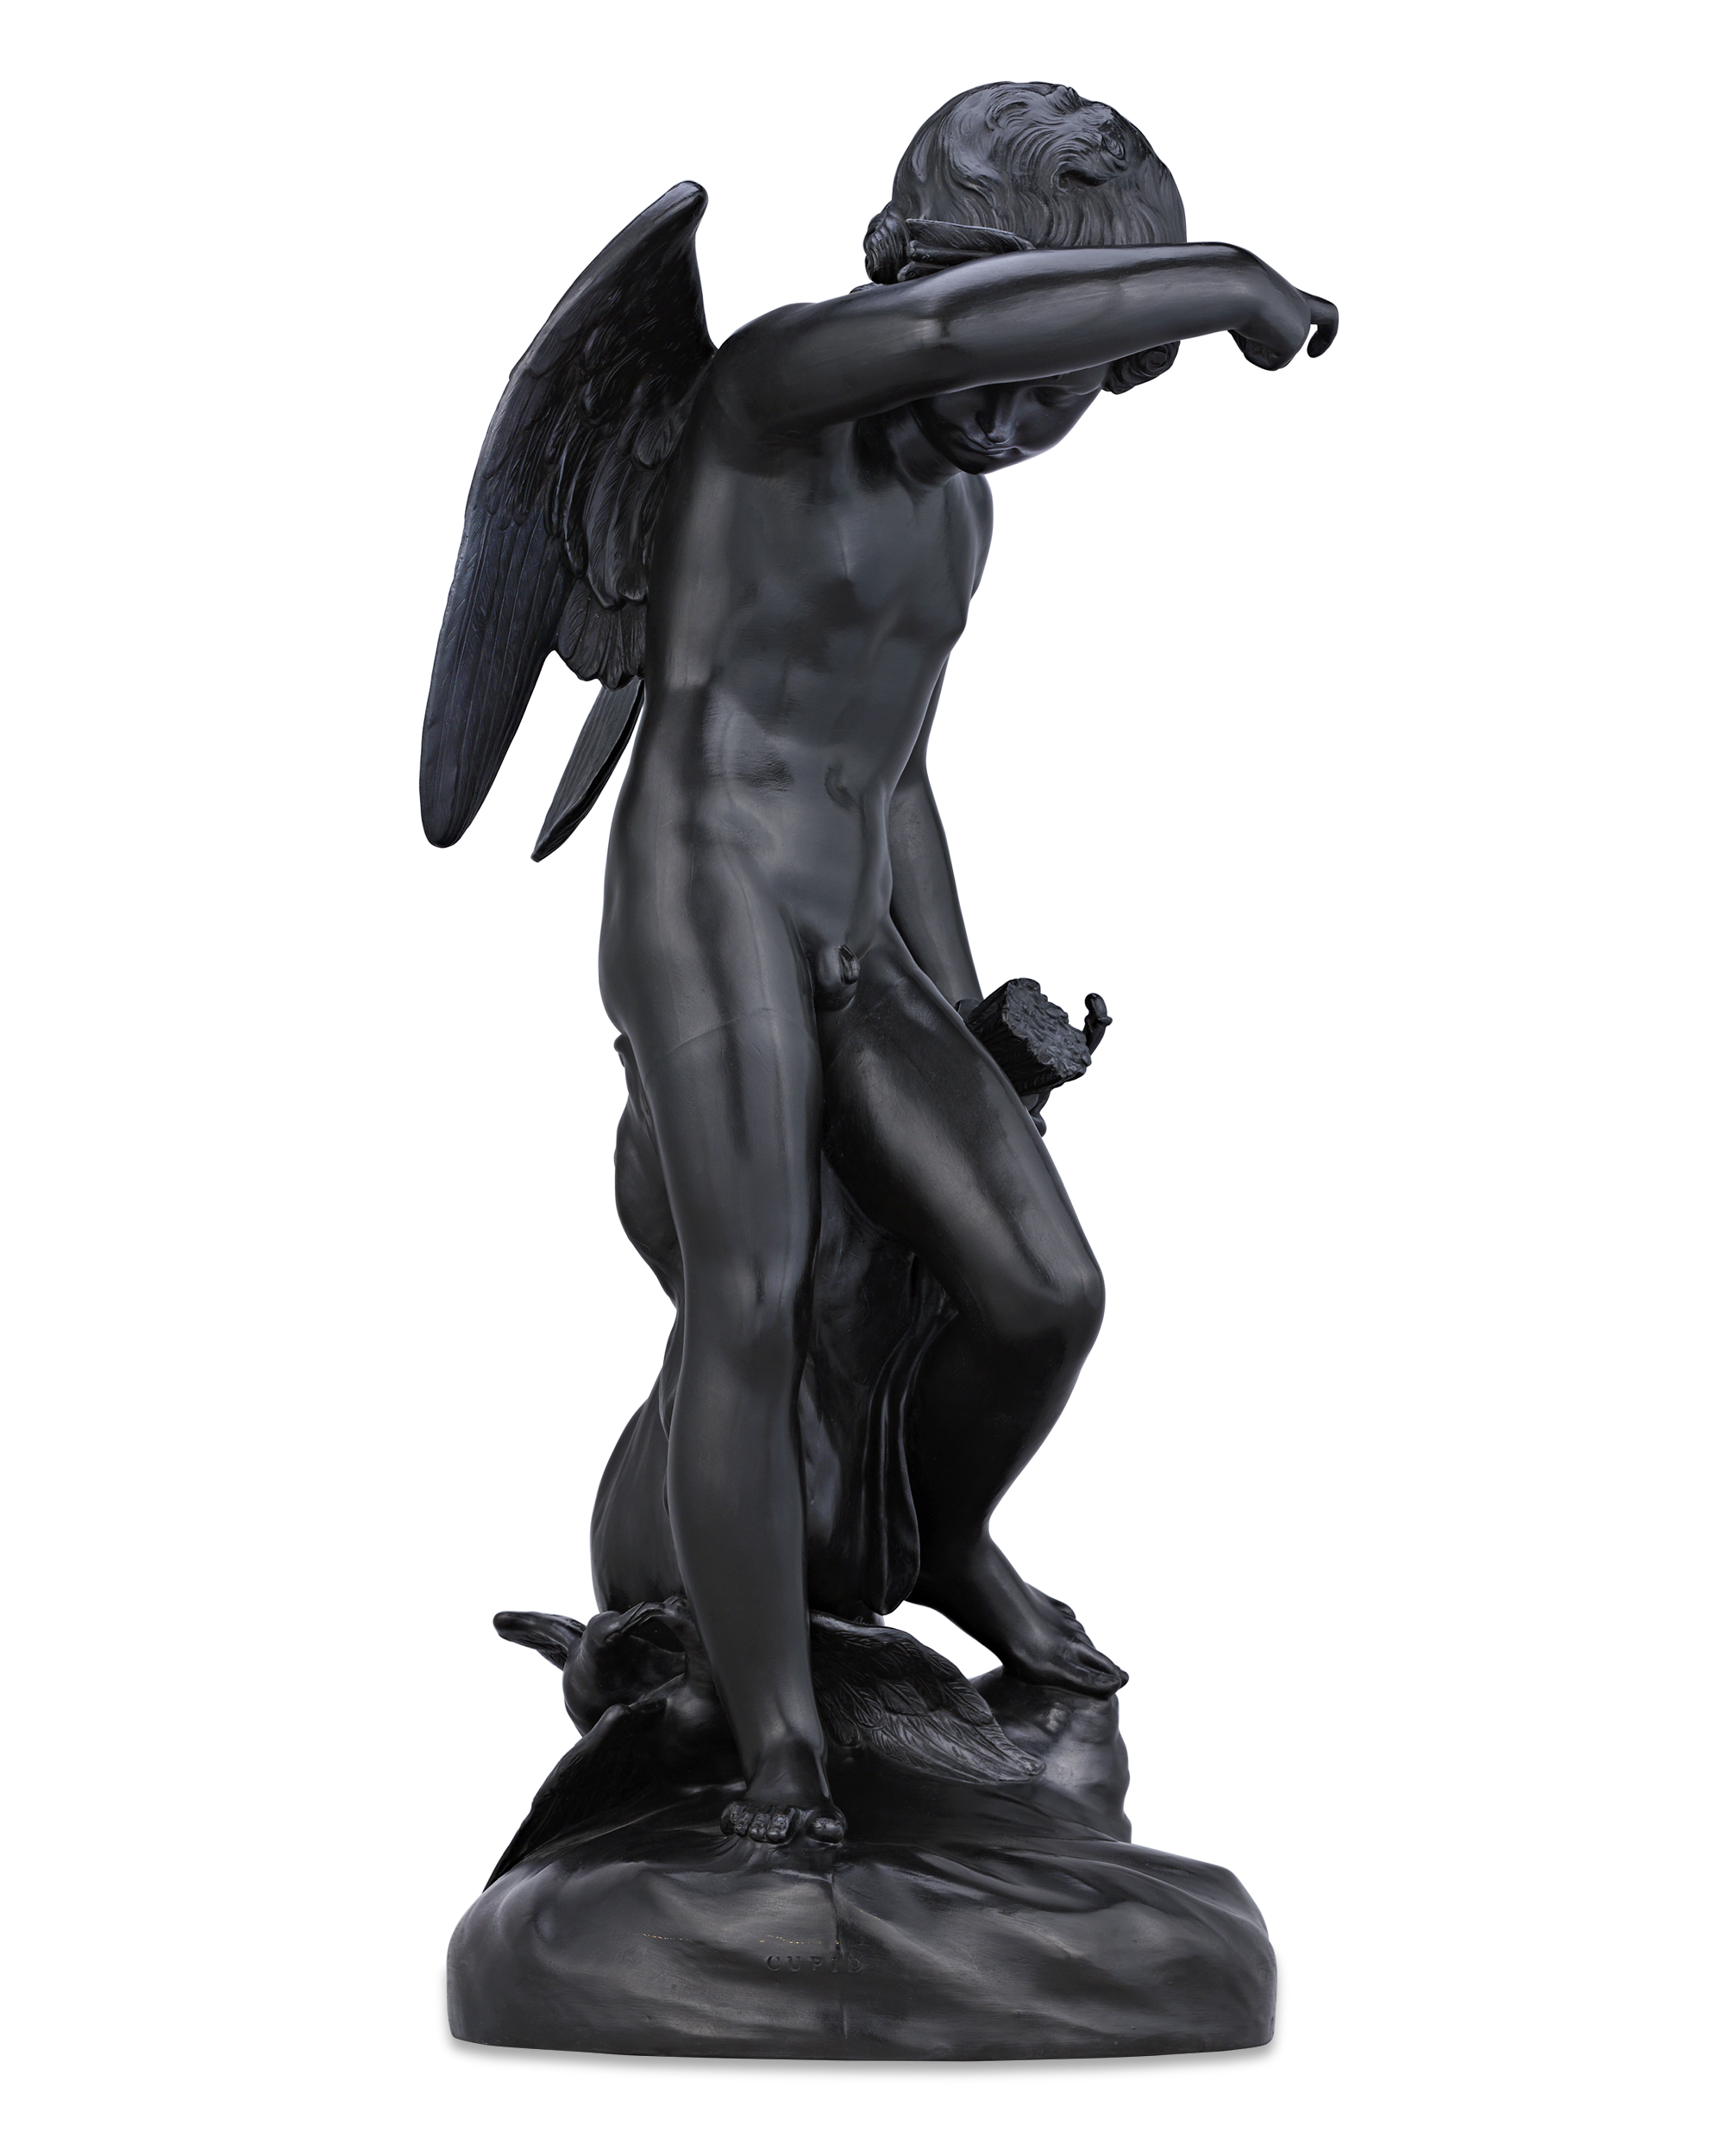 Wedgwood Black Basalt Figure of Cupid